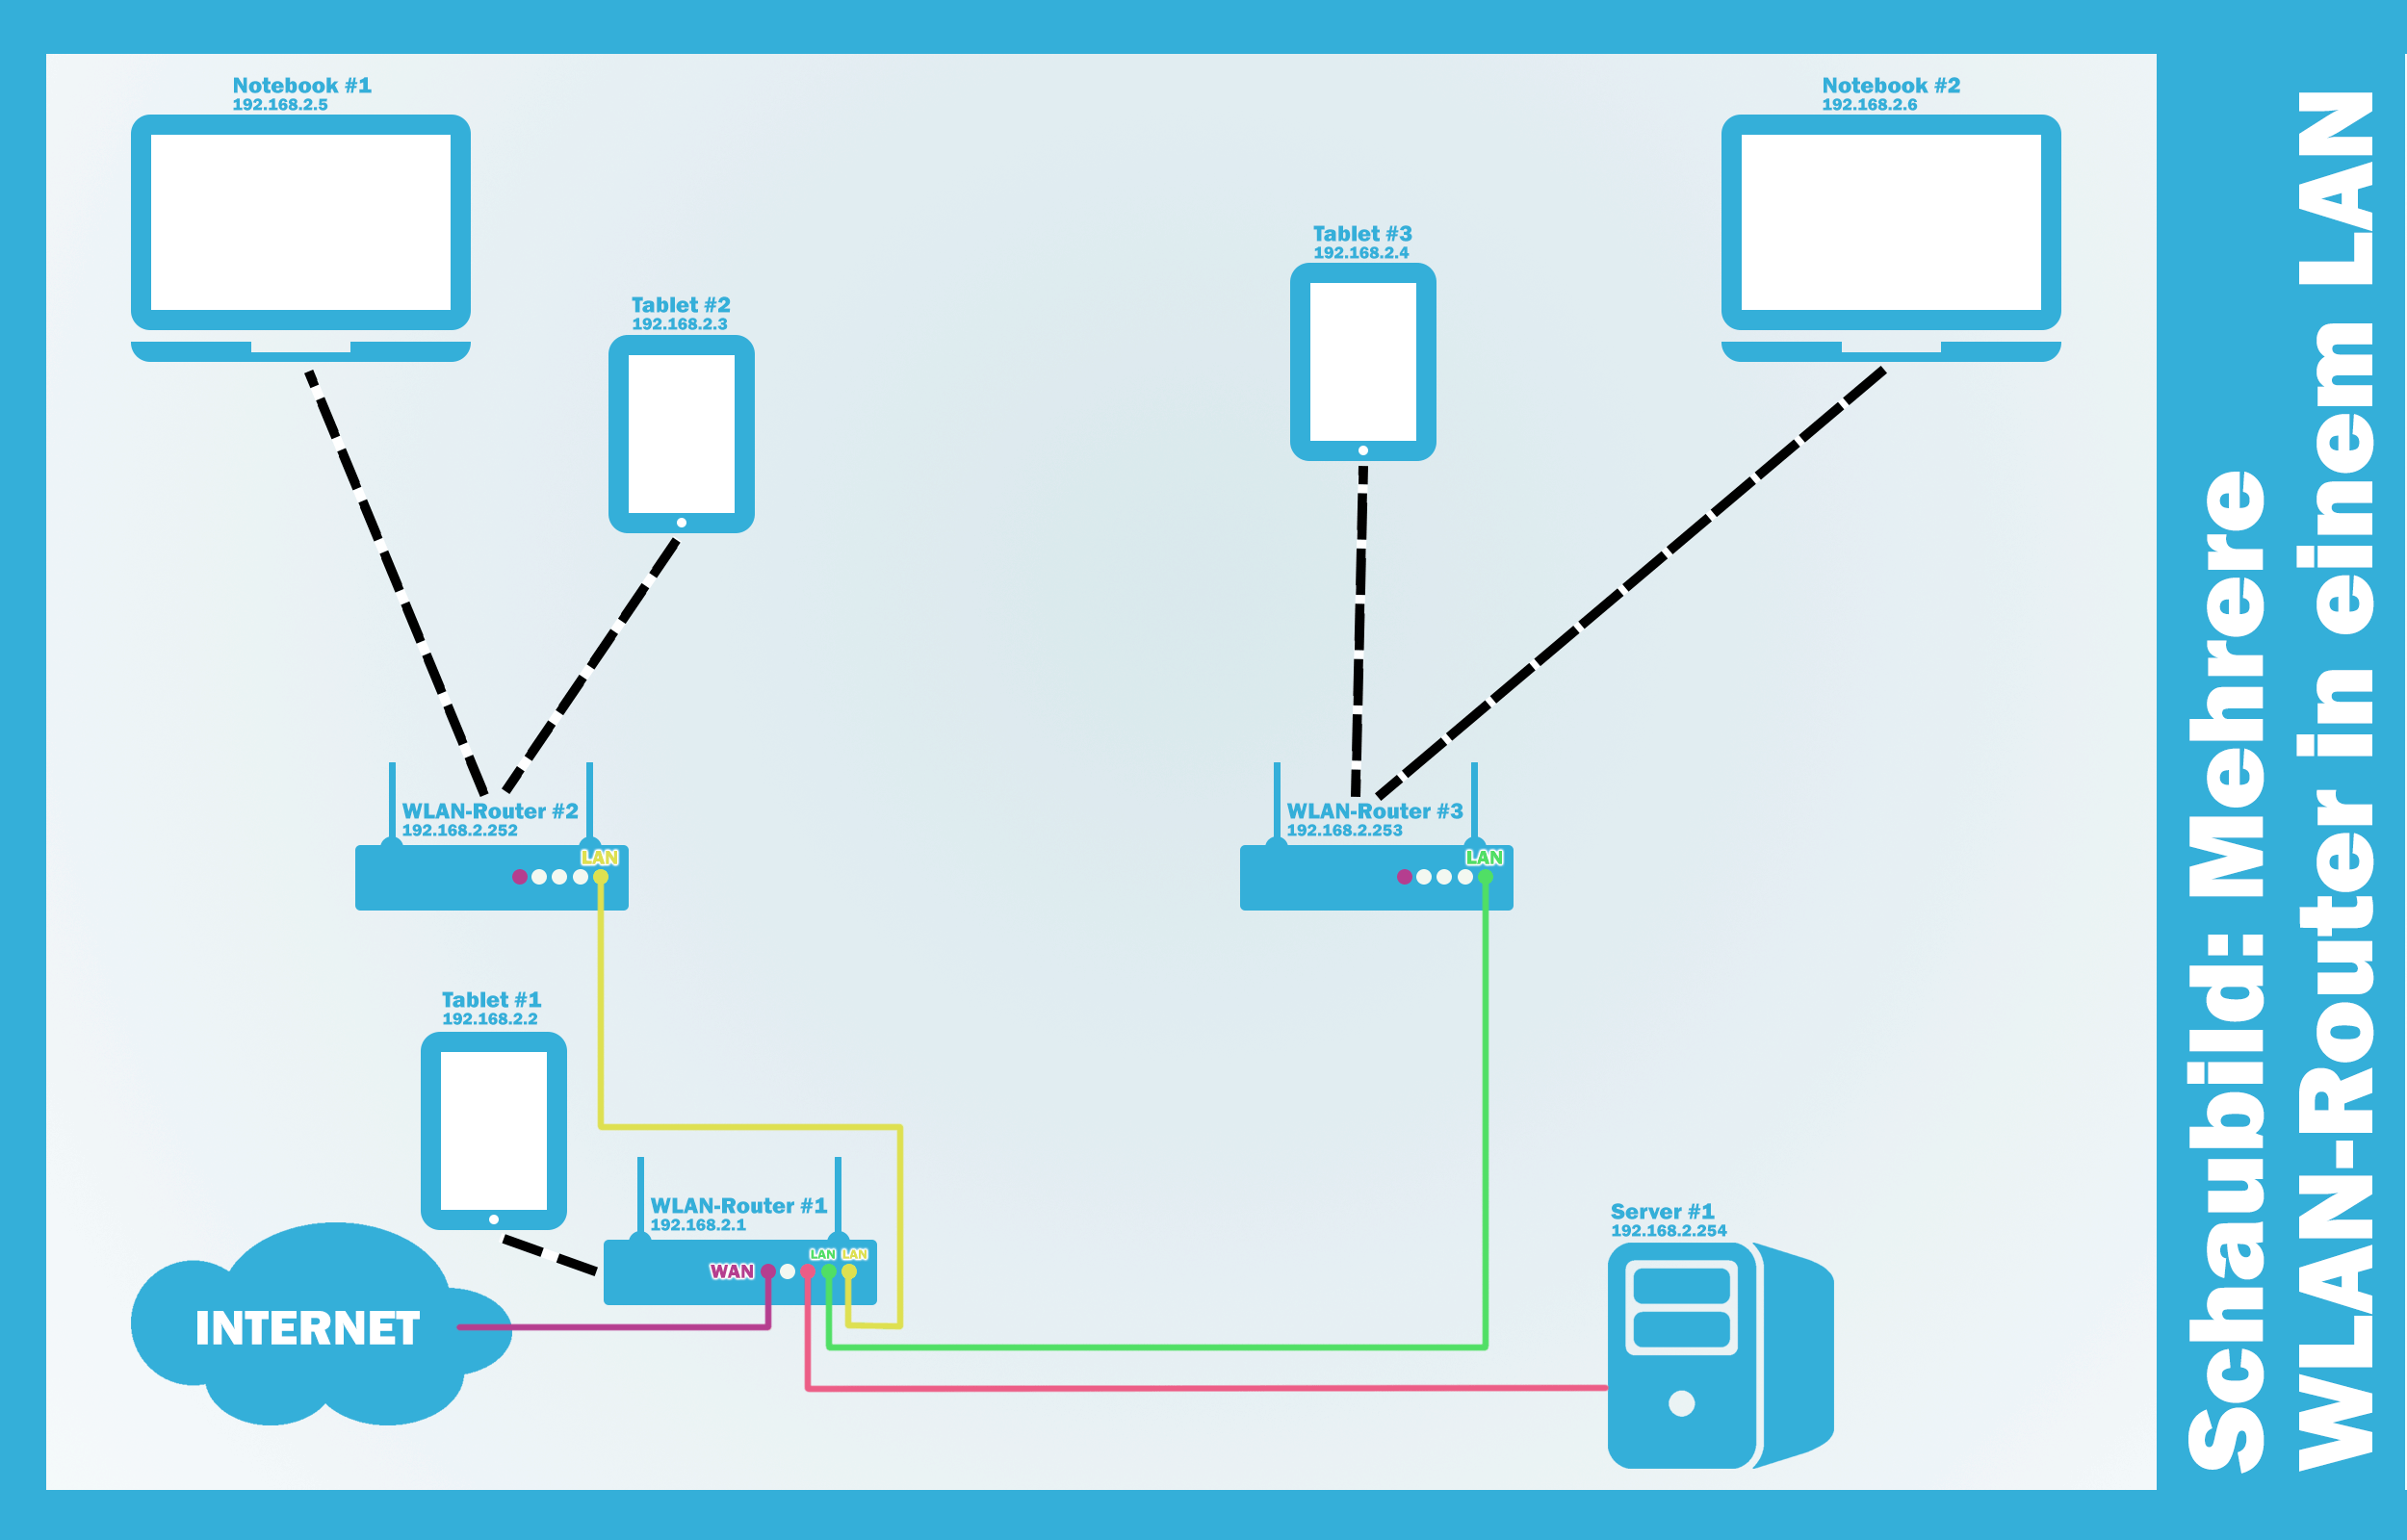 Wenn möglich, verbinden Sie Ihren Computer direkt mit dem Router über ein Ethernet-Kabel.
WLAN-Verbindungen können instabil sein und zu Verzögerungen führen.